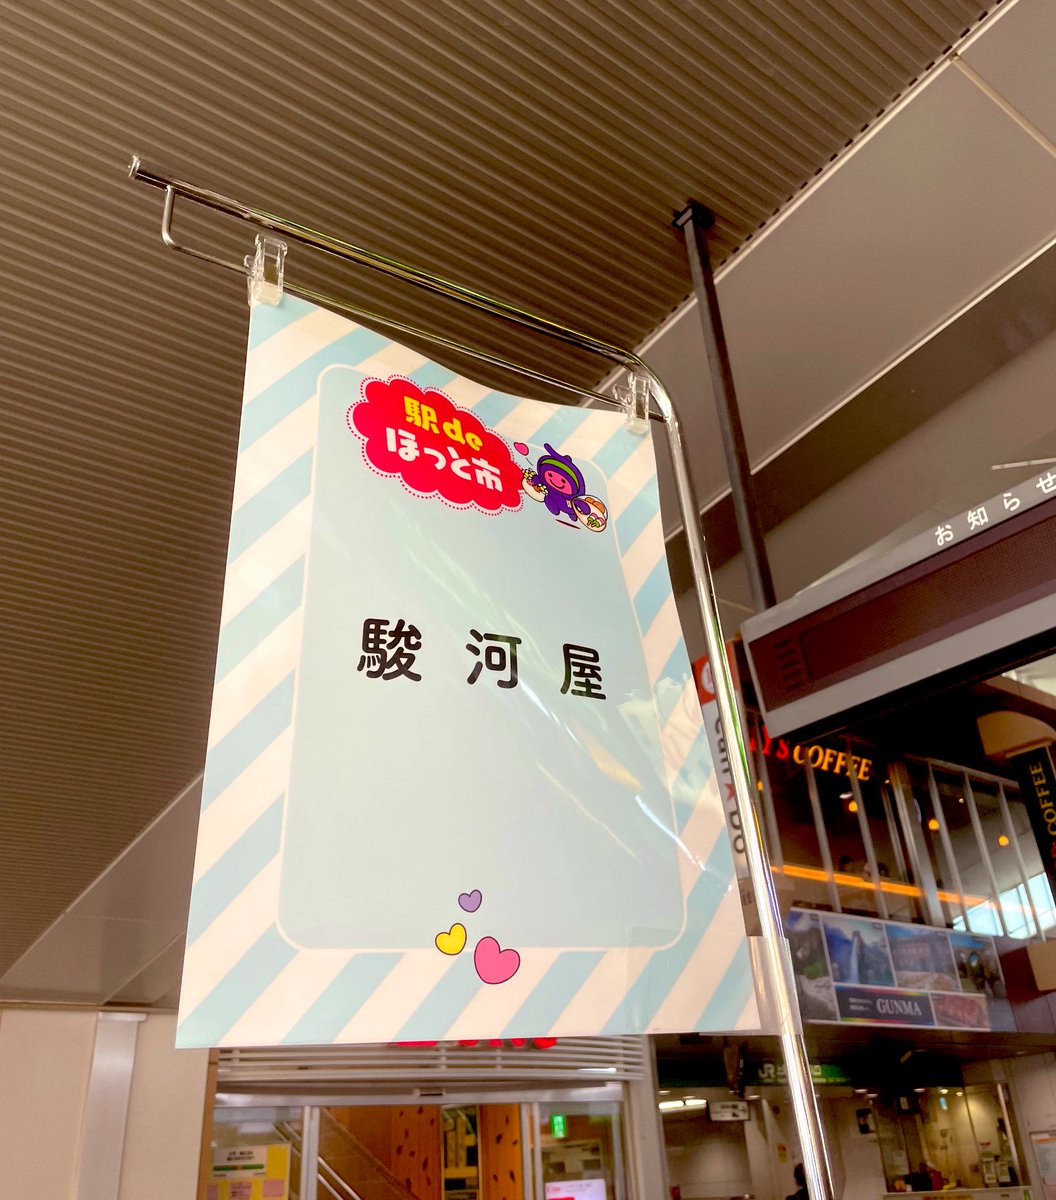 本日　上尾駅で
『駅deほっと市』開催中！

駿河屋も元気に出店中。
たくさんのお客様
ありがとうございます‼️😊
#上尾  #和菓子  
#日本文化
#和菓子で笑顔に
#japaneseculture